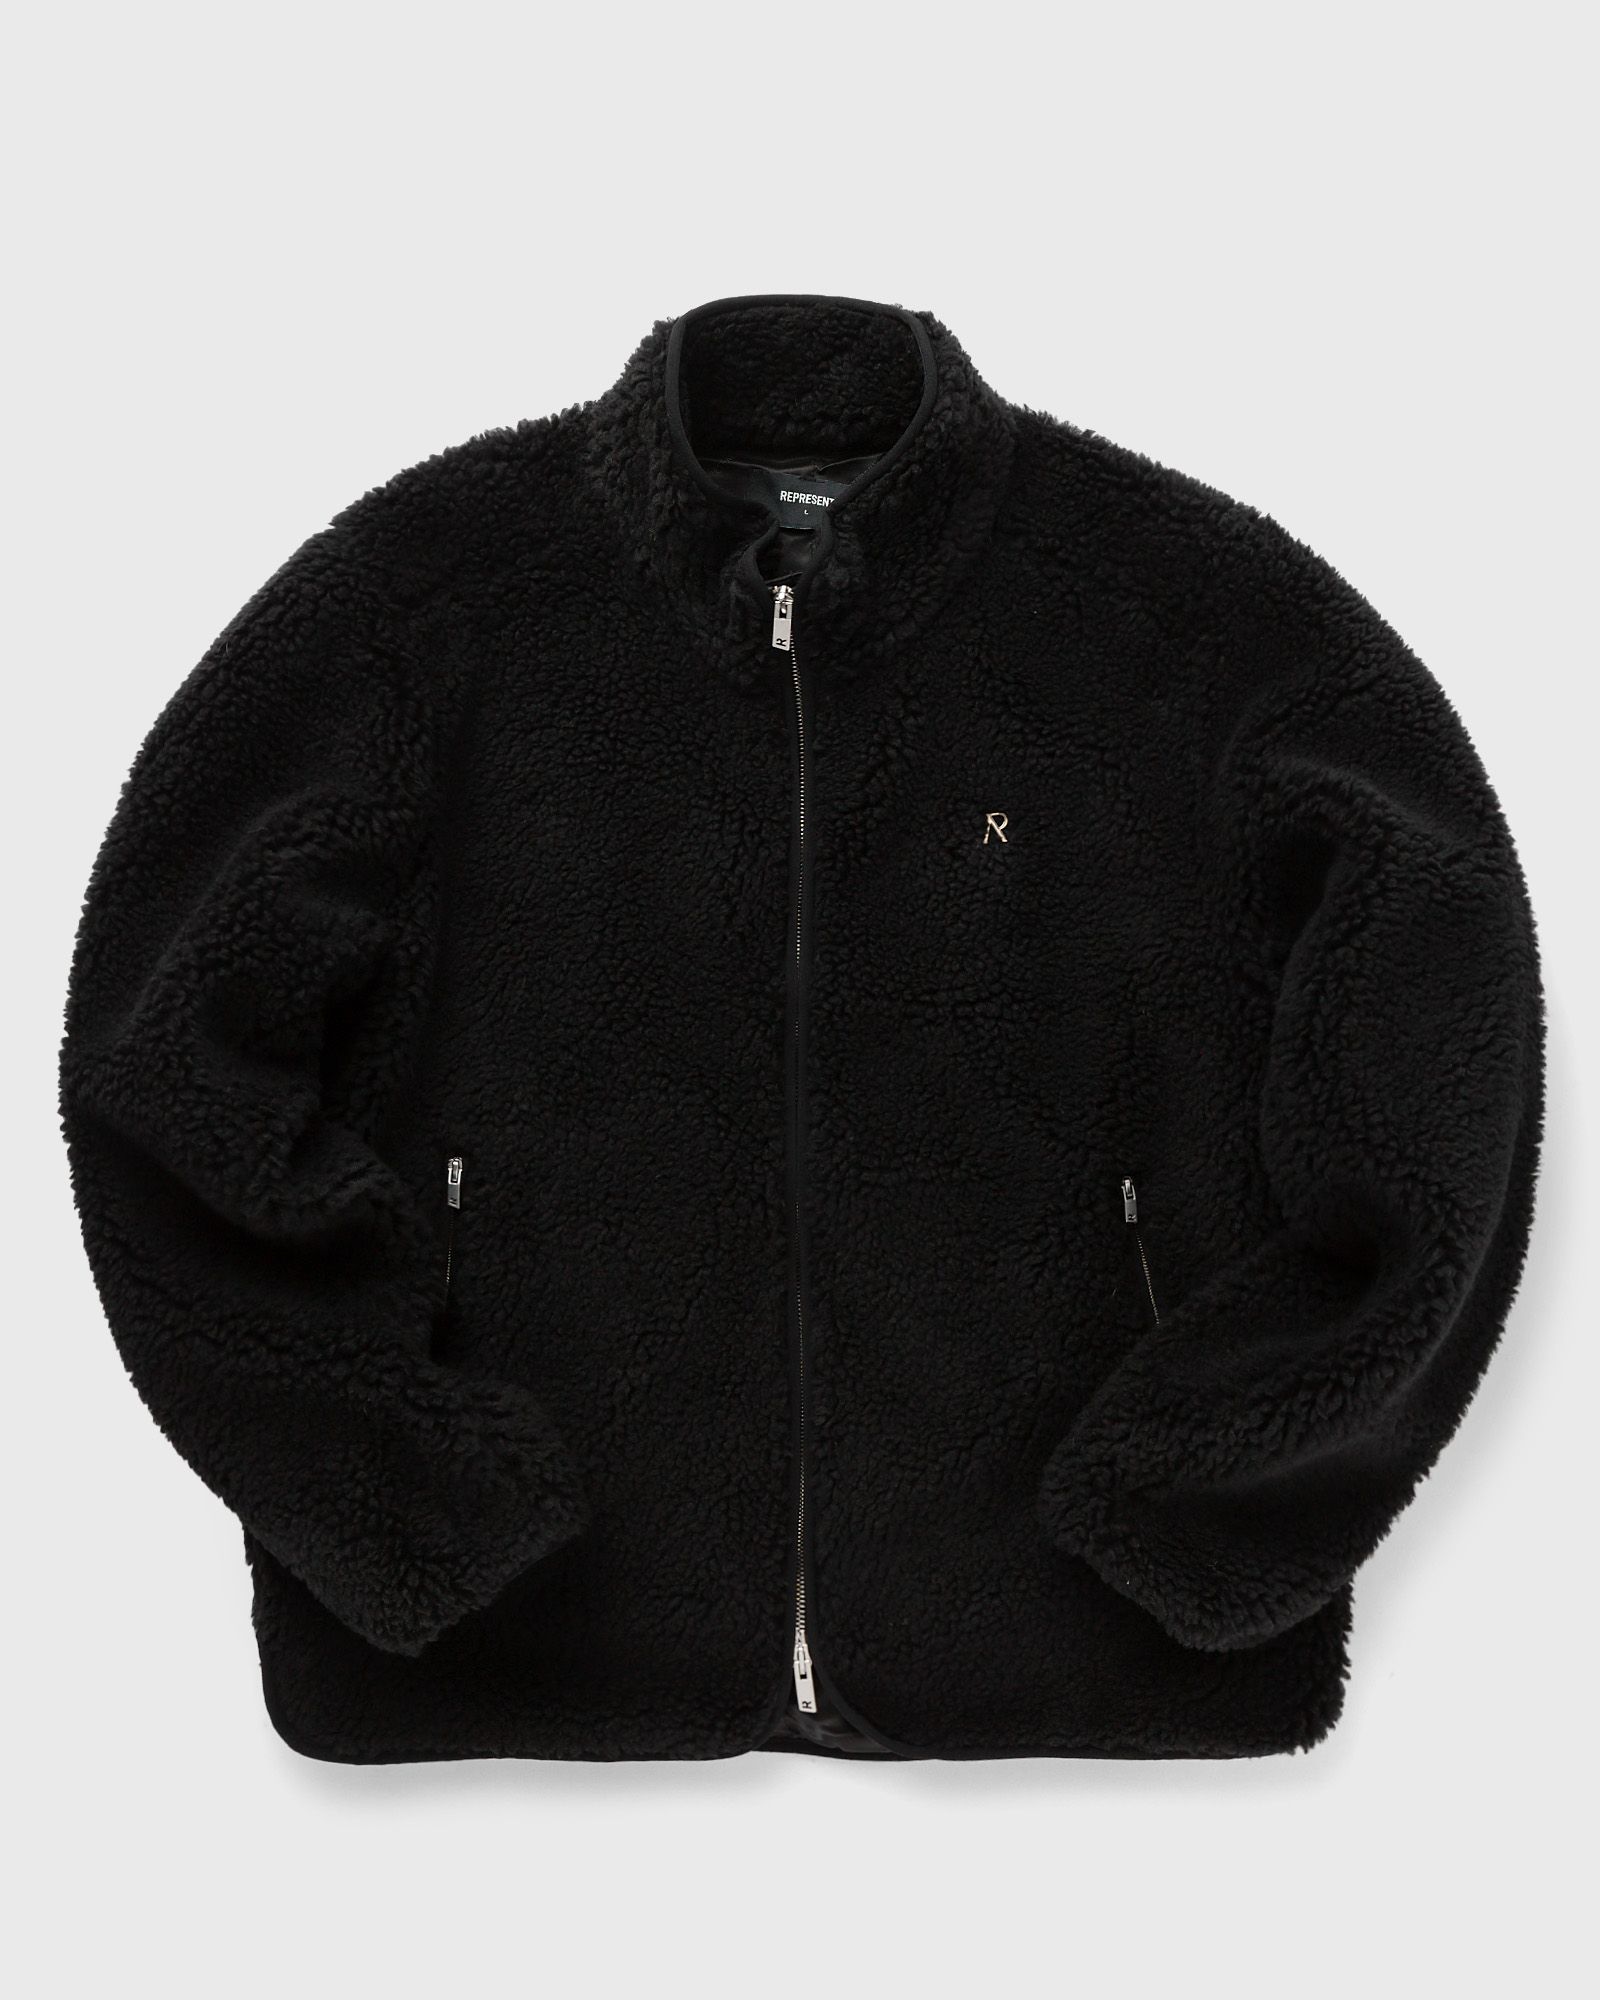 Represent - fleece zip through men fleece jackets black in größe:s